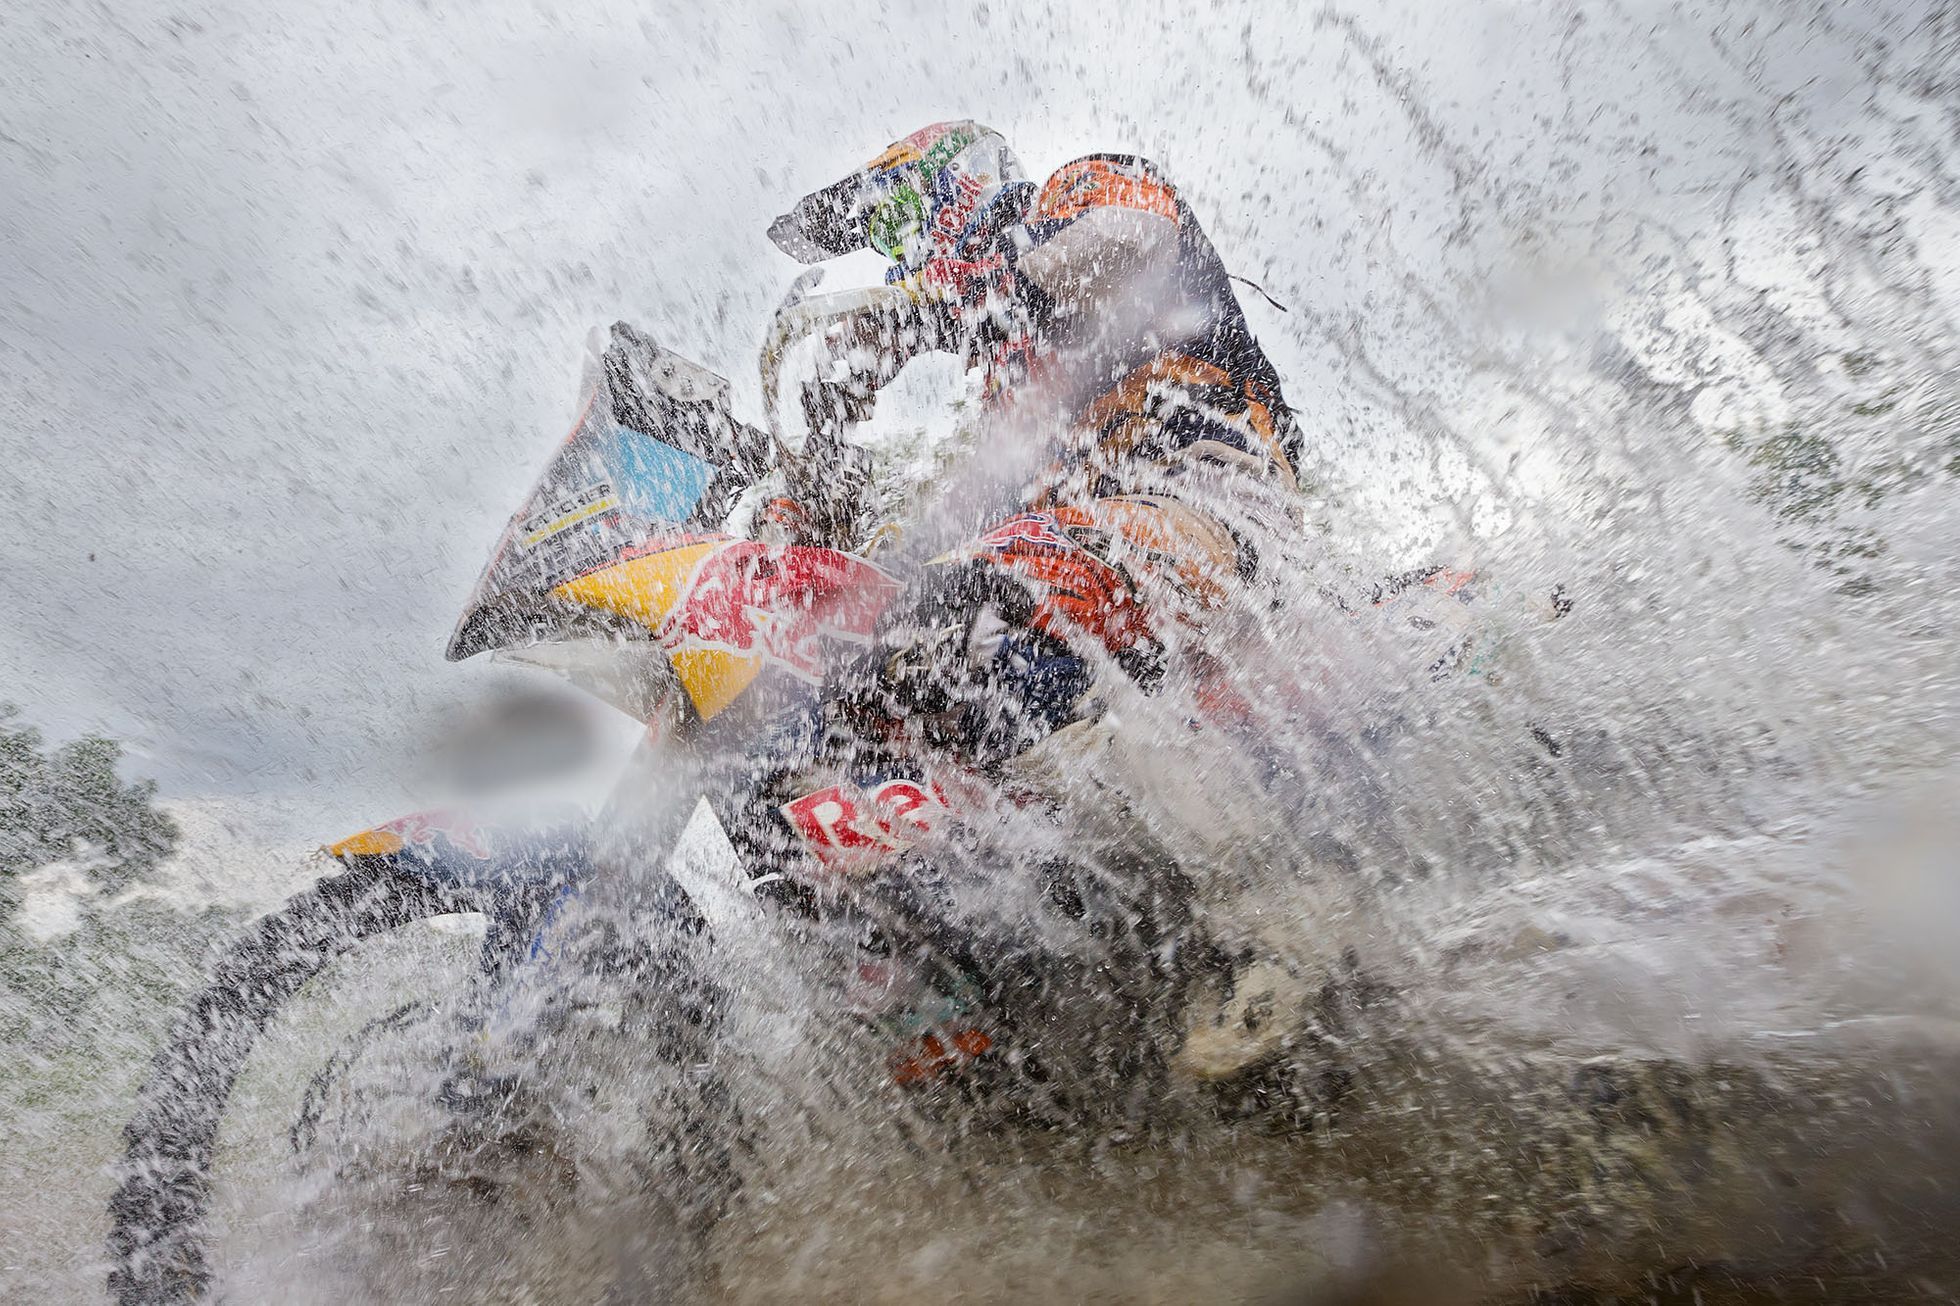 Ondřej Záruba - fotografie z Rallye Dakar